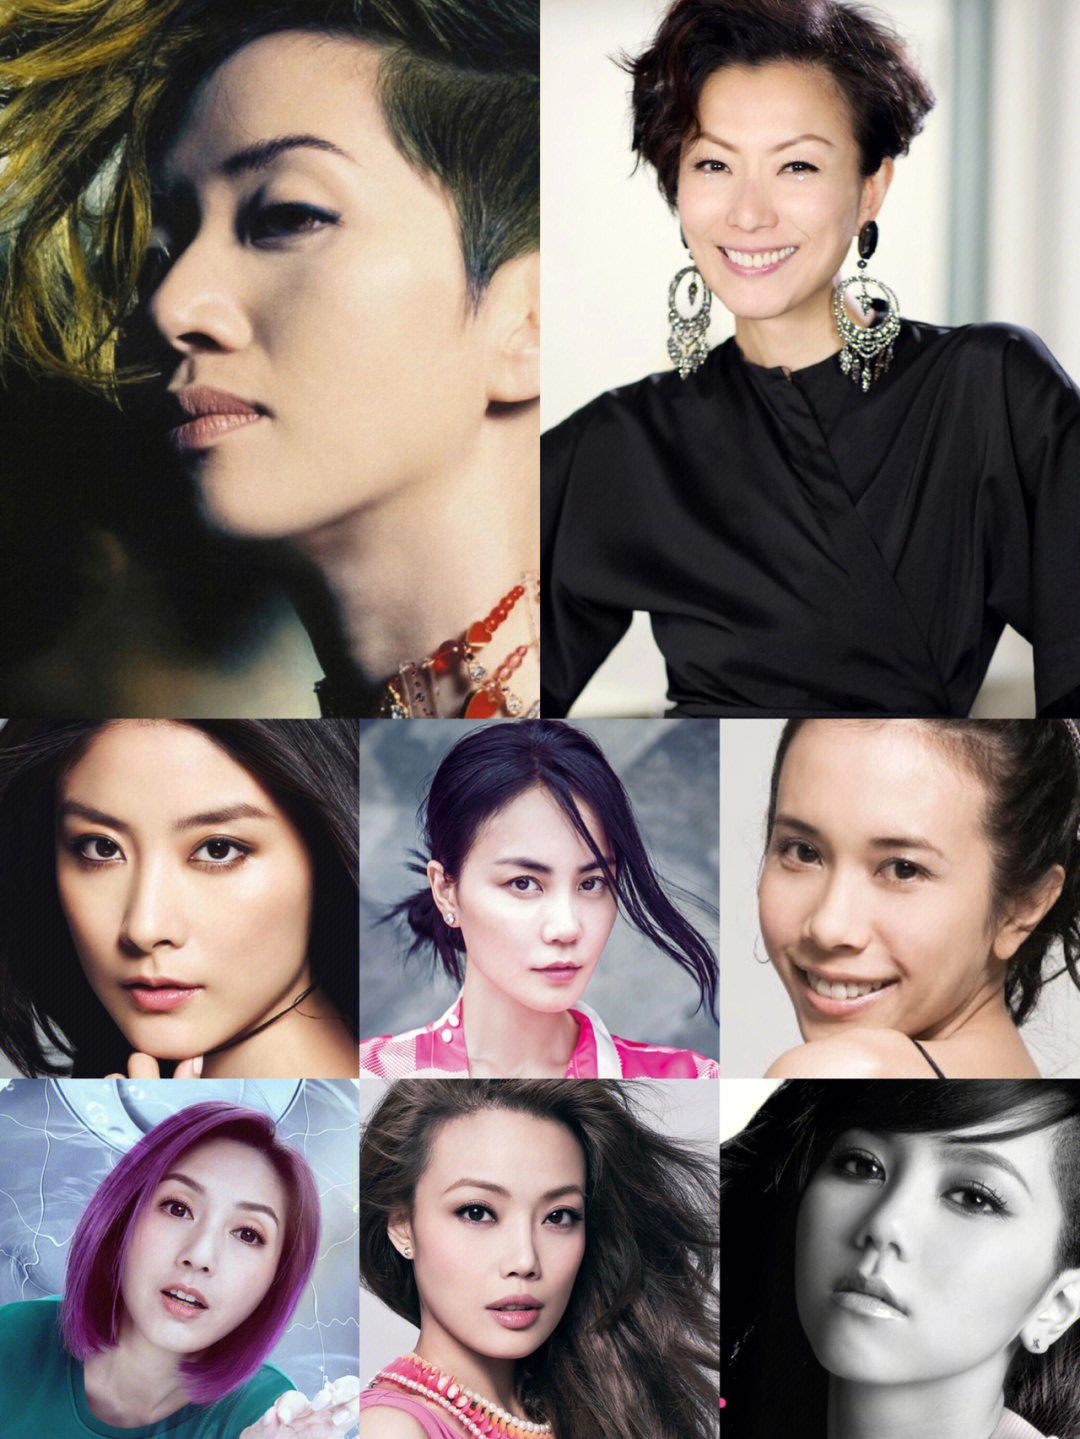 香港老牌女歌手 排名图片